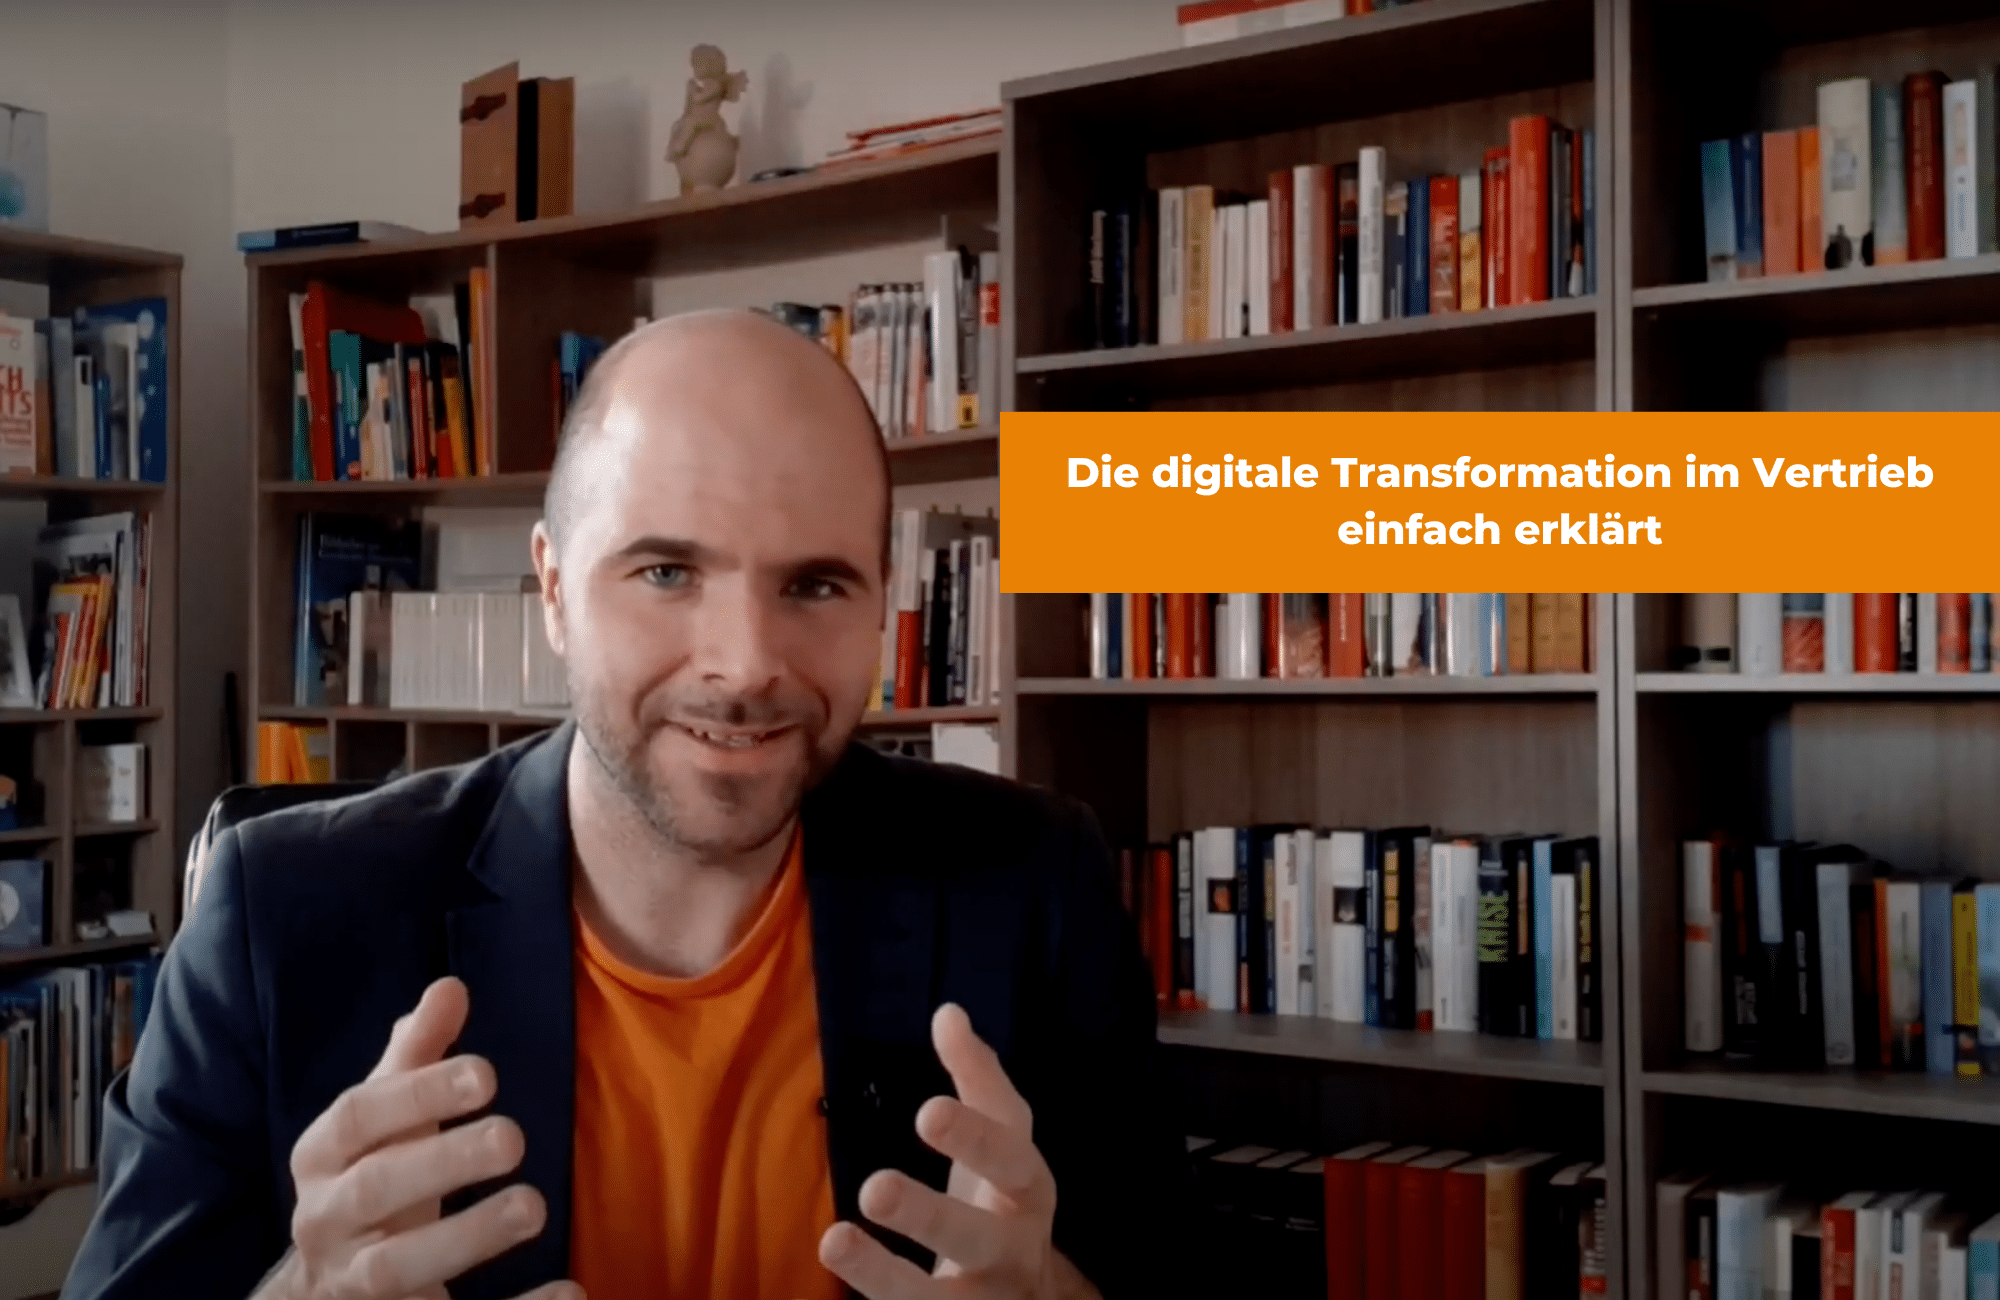 Jürgen erklärt die digitale Transformation